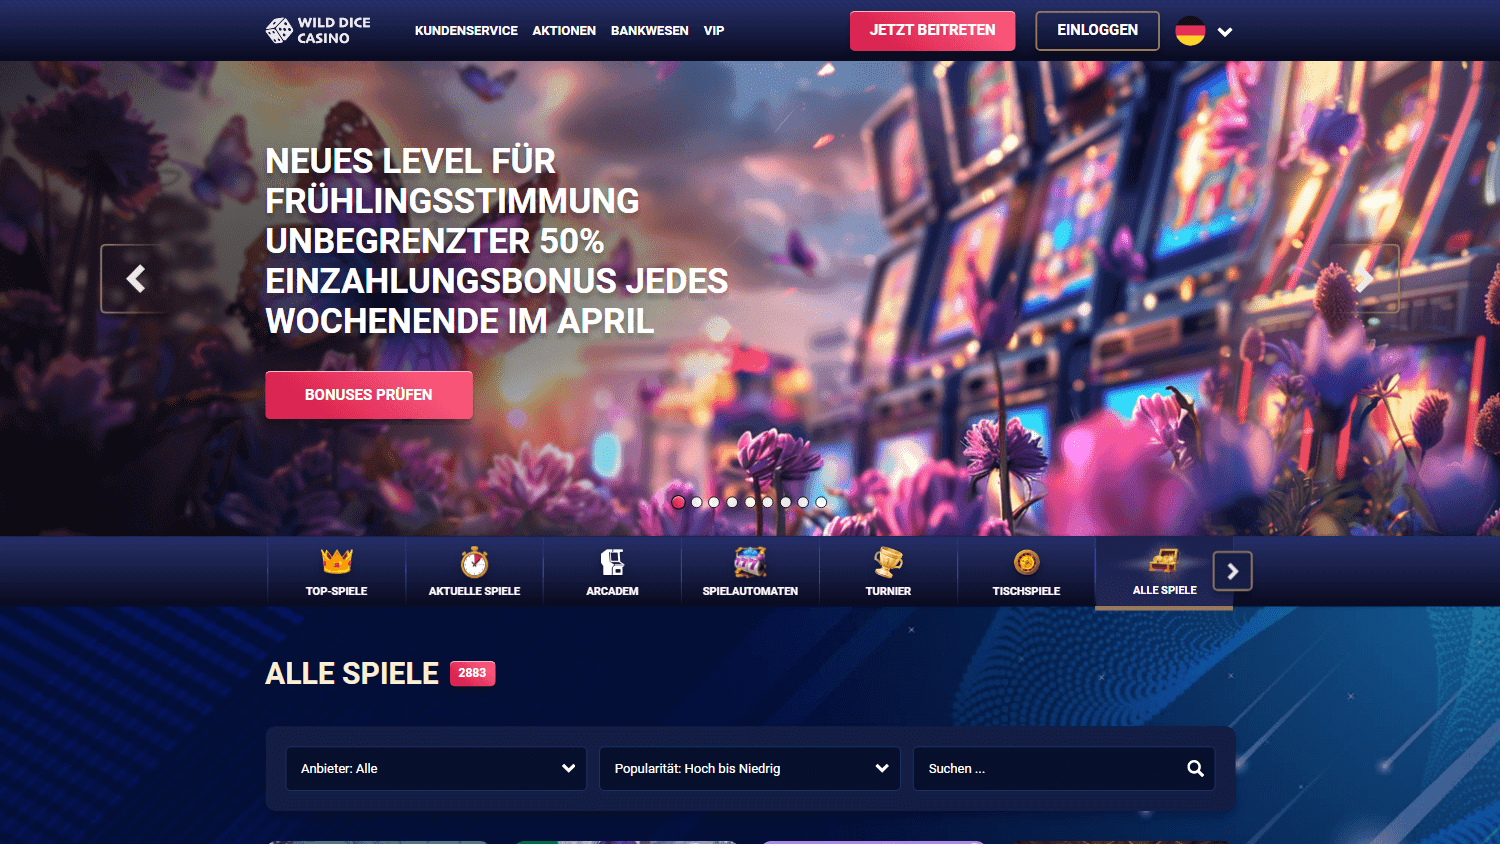 wild_dice_casino_homepage_desktop